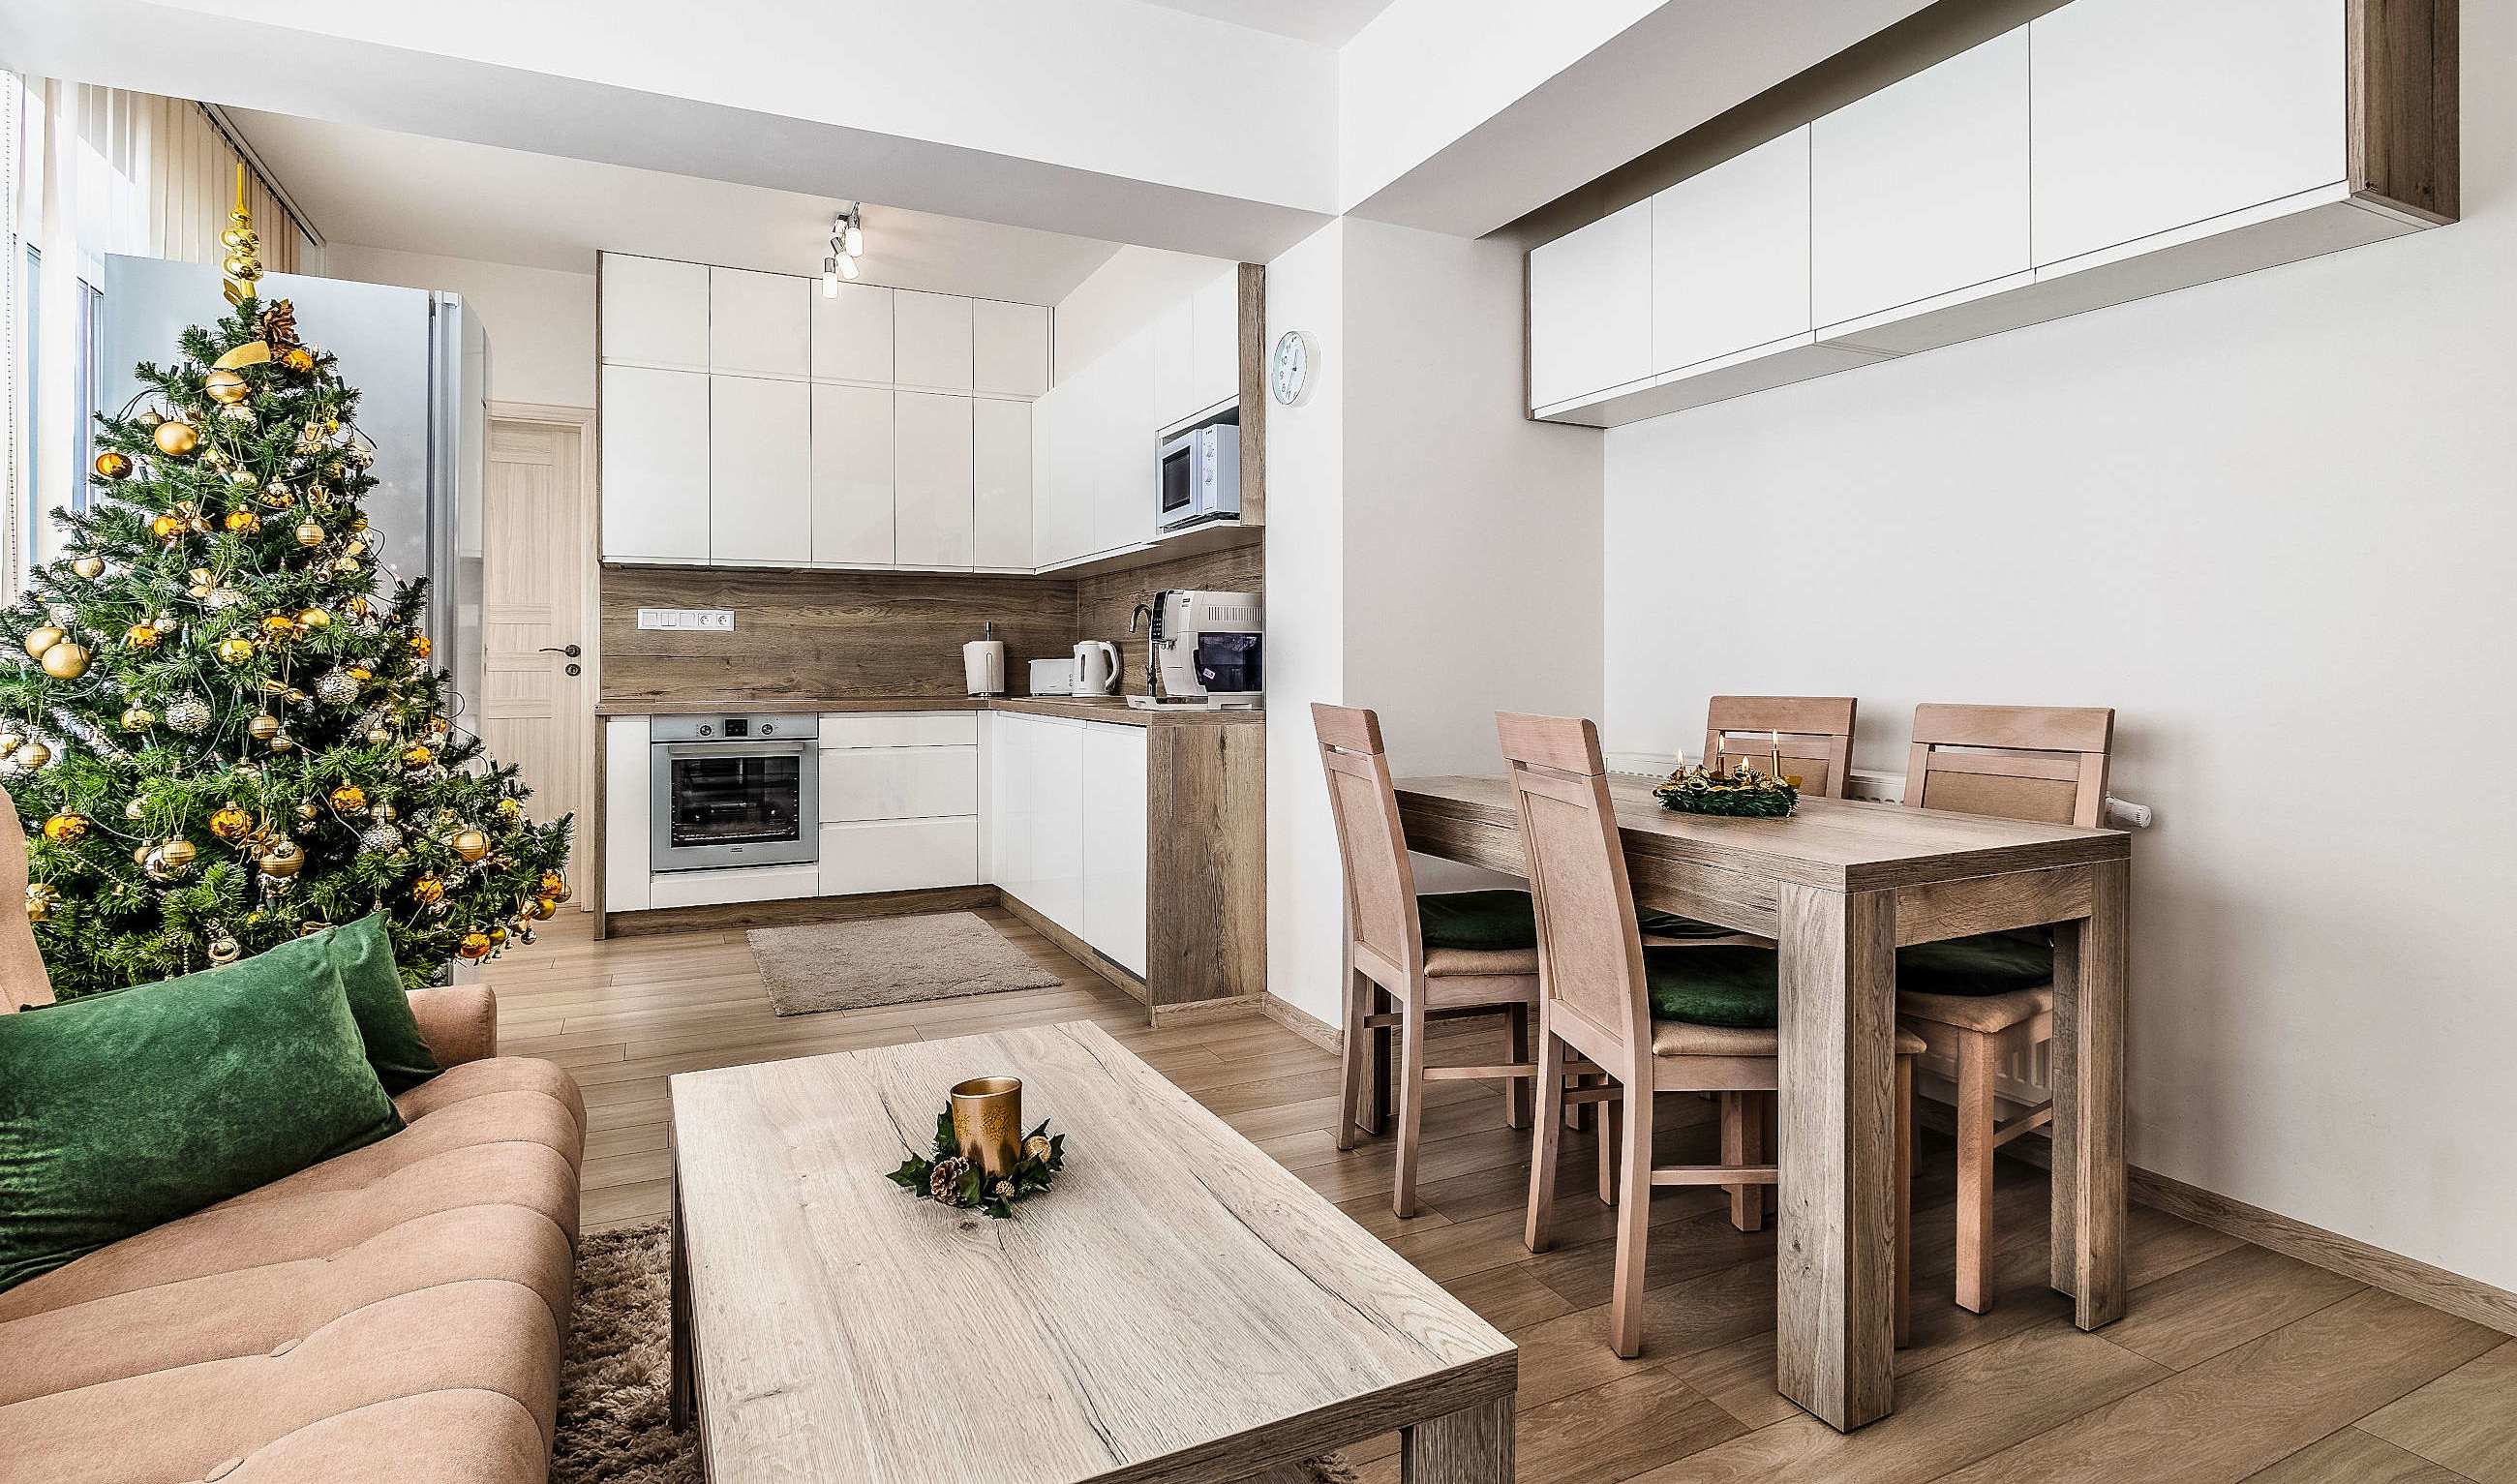 V moderných interiéroch je kuchyňa prepojená s jedálňou a obývačkou